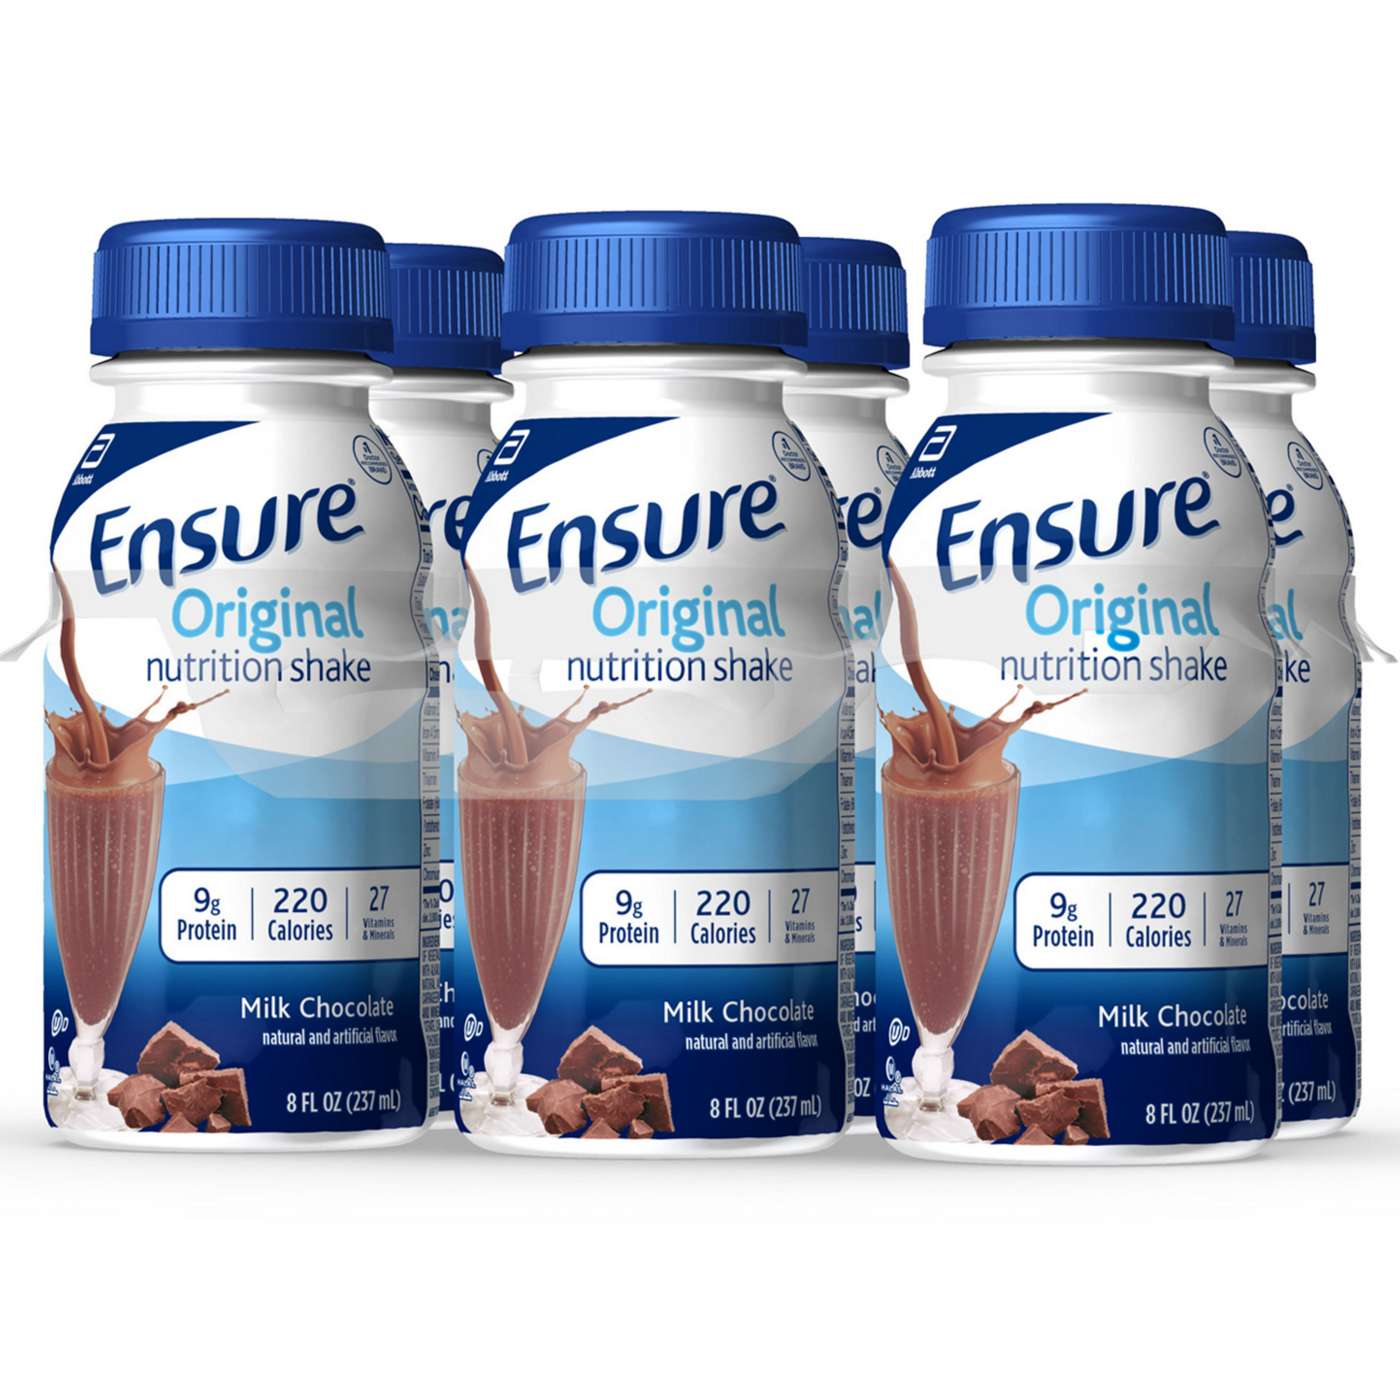 Ensure Original Nutrition Shake - Milk Chocolate, 6 pk; image 9 of 10